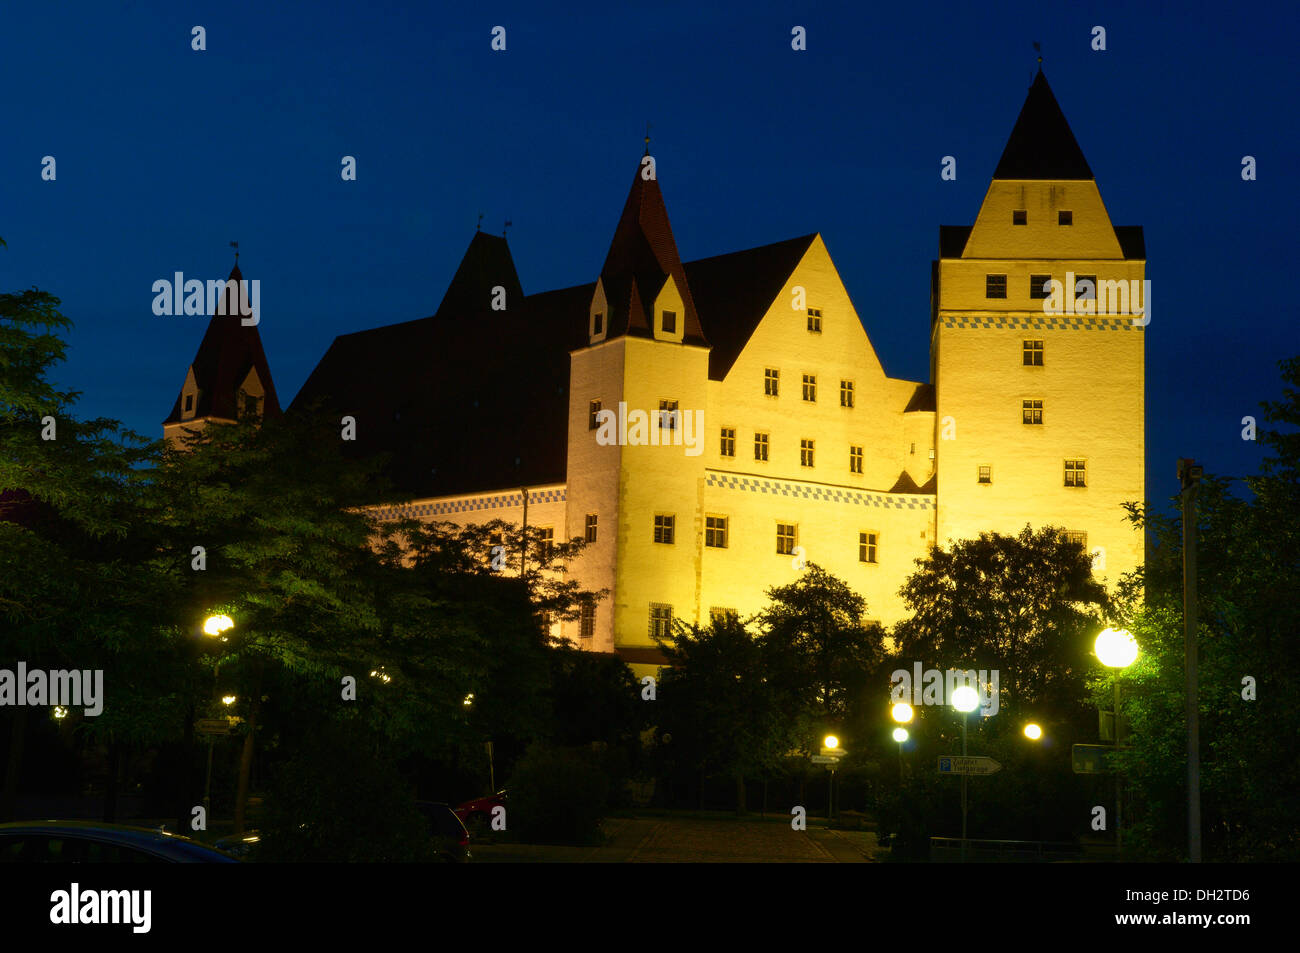 Neues Schloss castle, Danube river, Ingolstadt, Upper Bavaria, Bavaria, Germany, Europe. Stock Photo